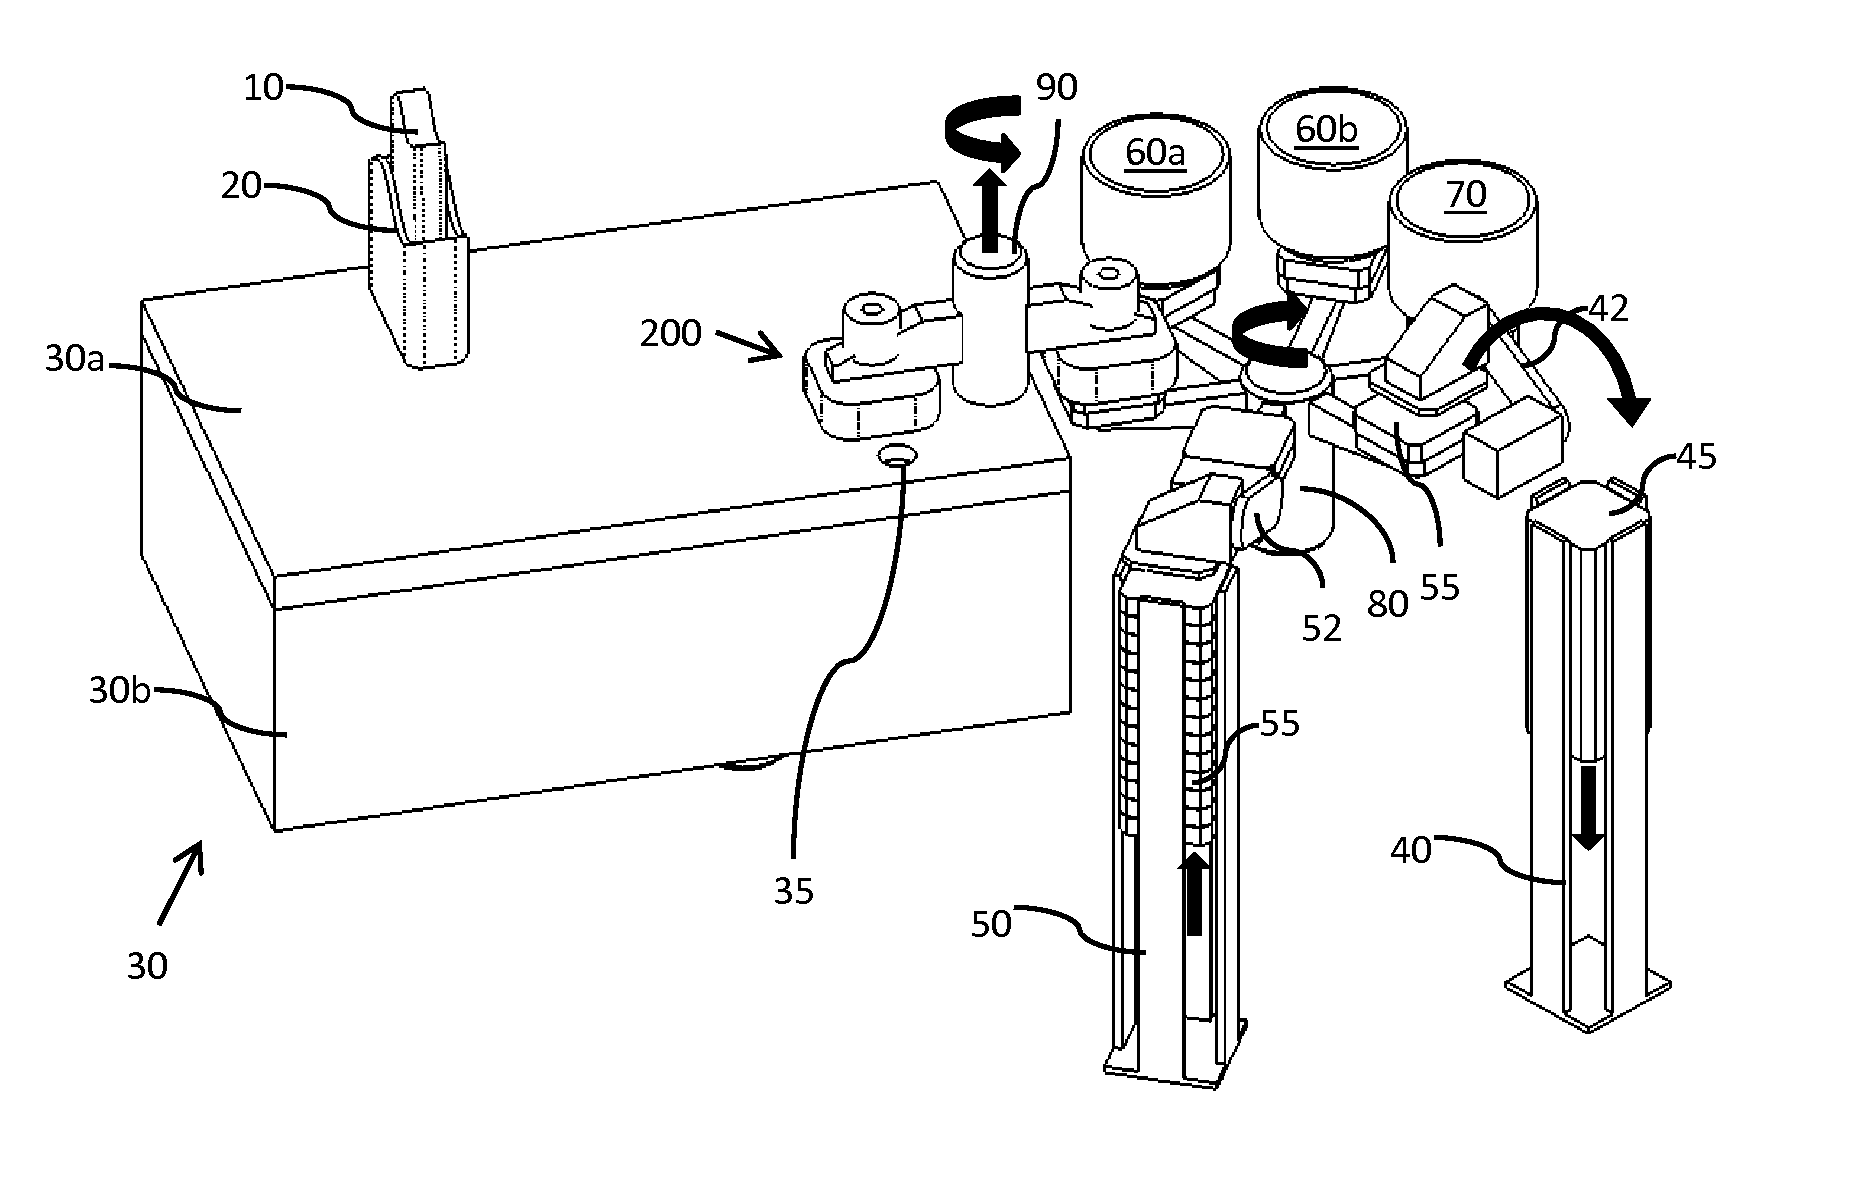 Ion Beam Processing Apparatus